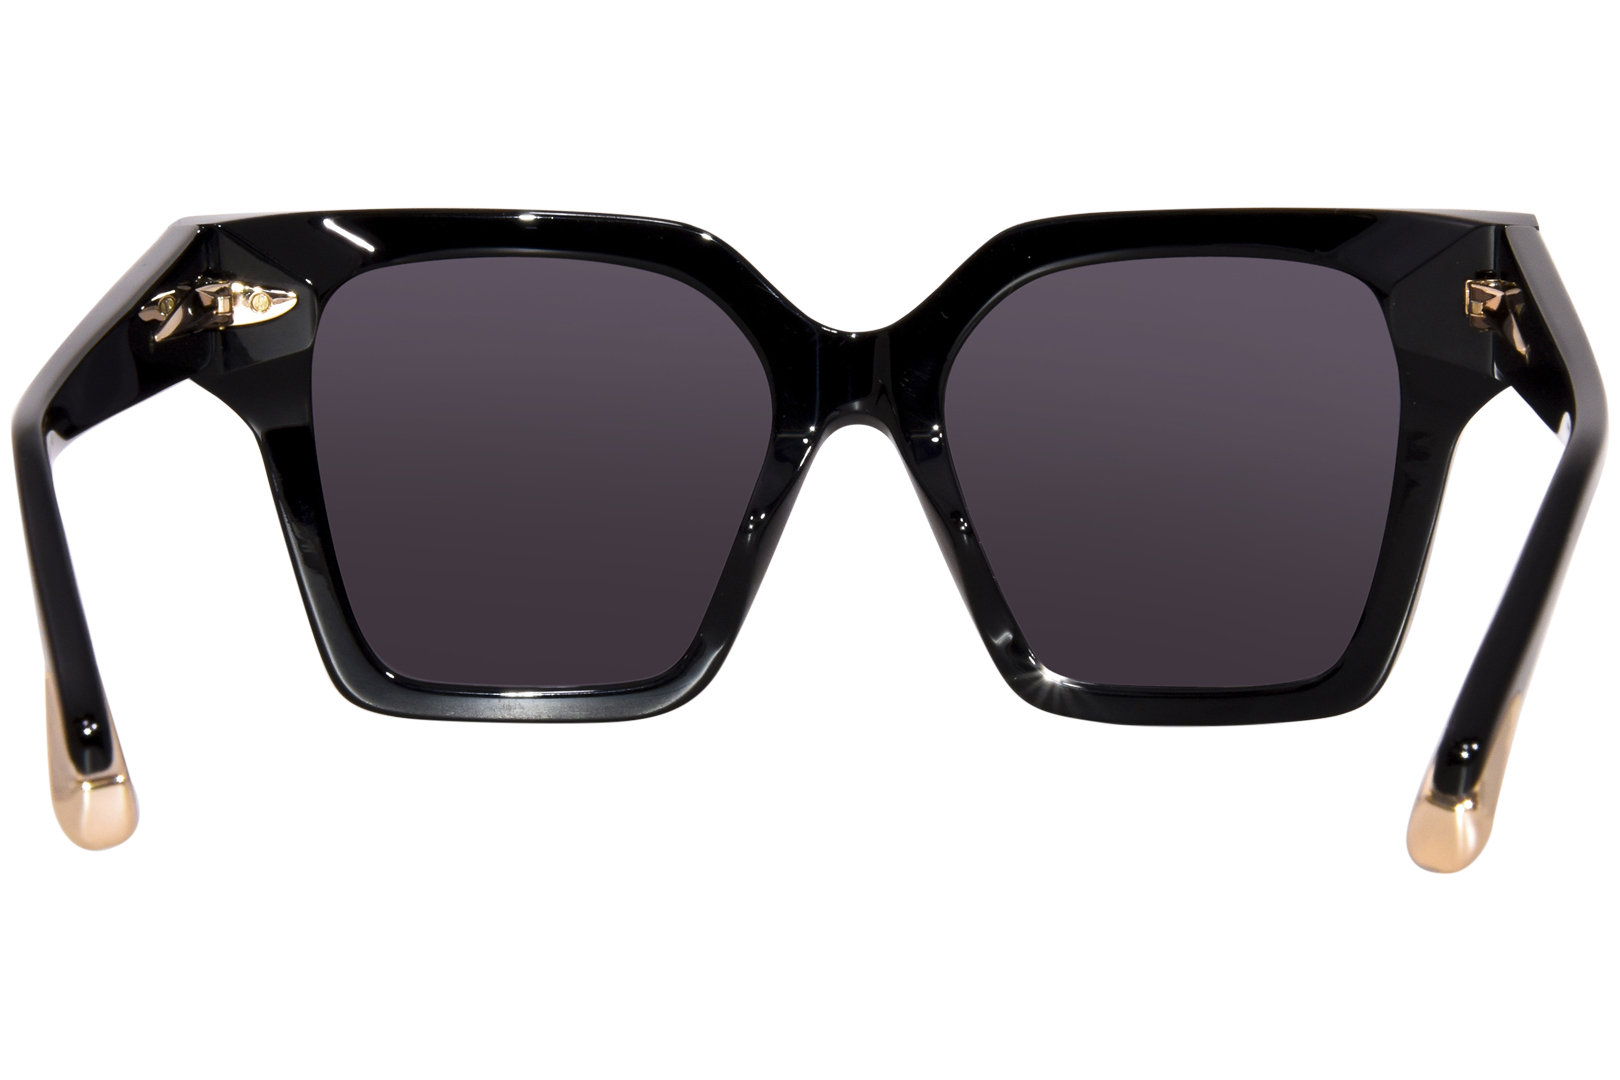 Sunglasses Just Cavalli SJC022 700X